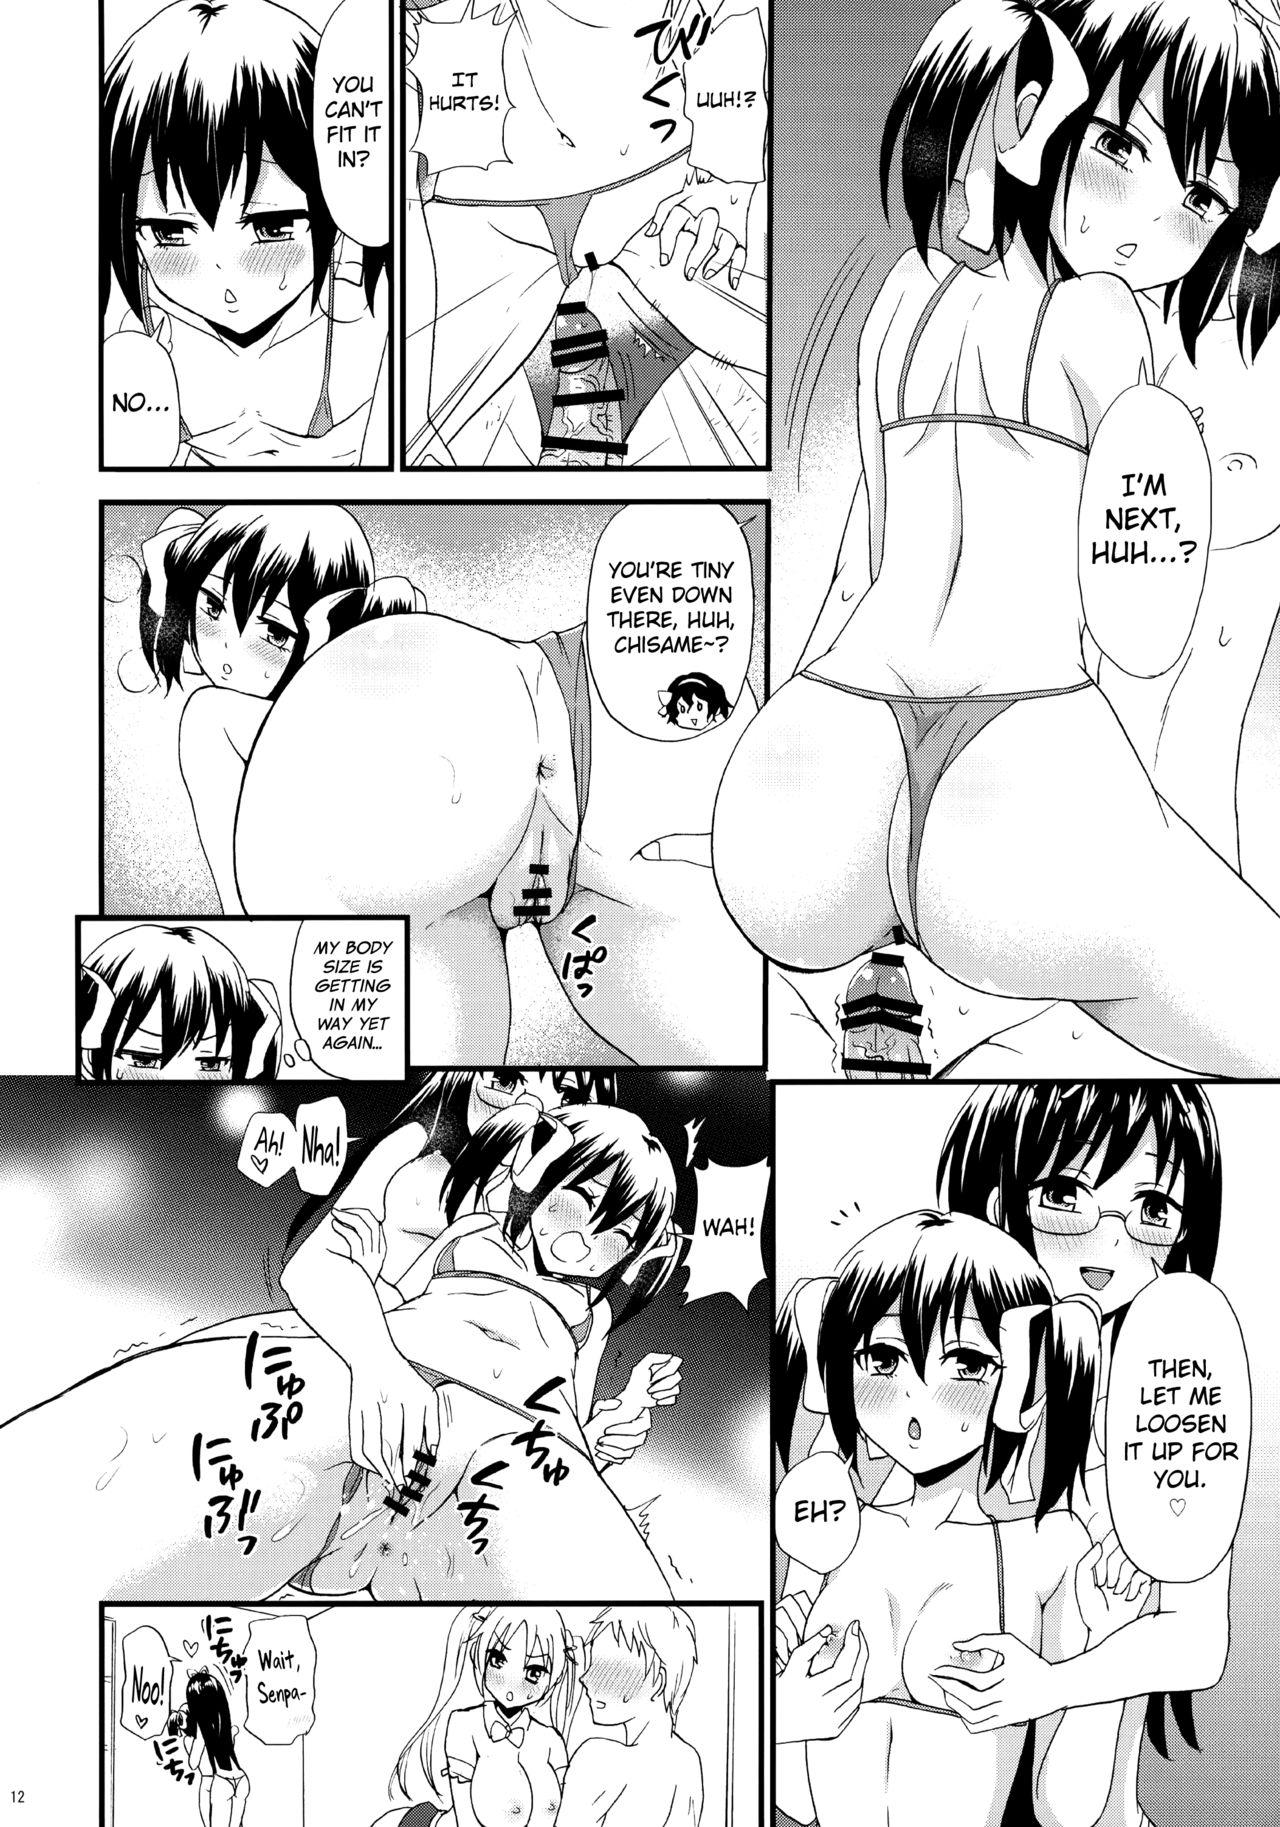 Bra Bike-bu no Omotenashi - Bakuon Free Amature Porn - Page 13